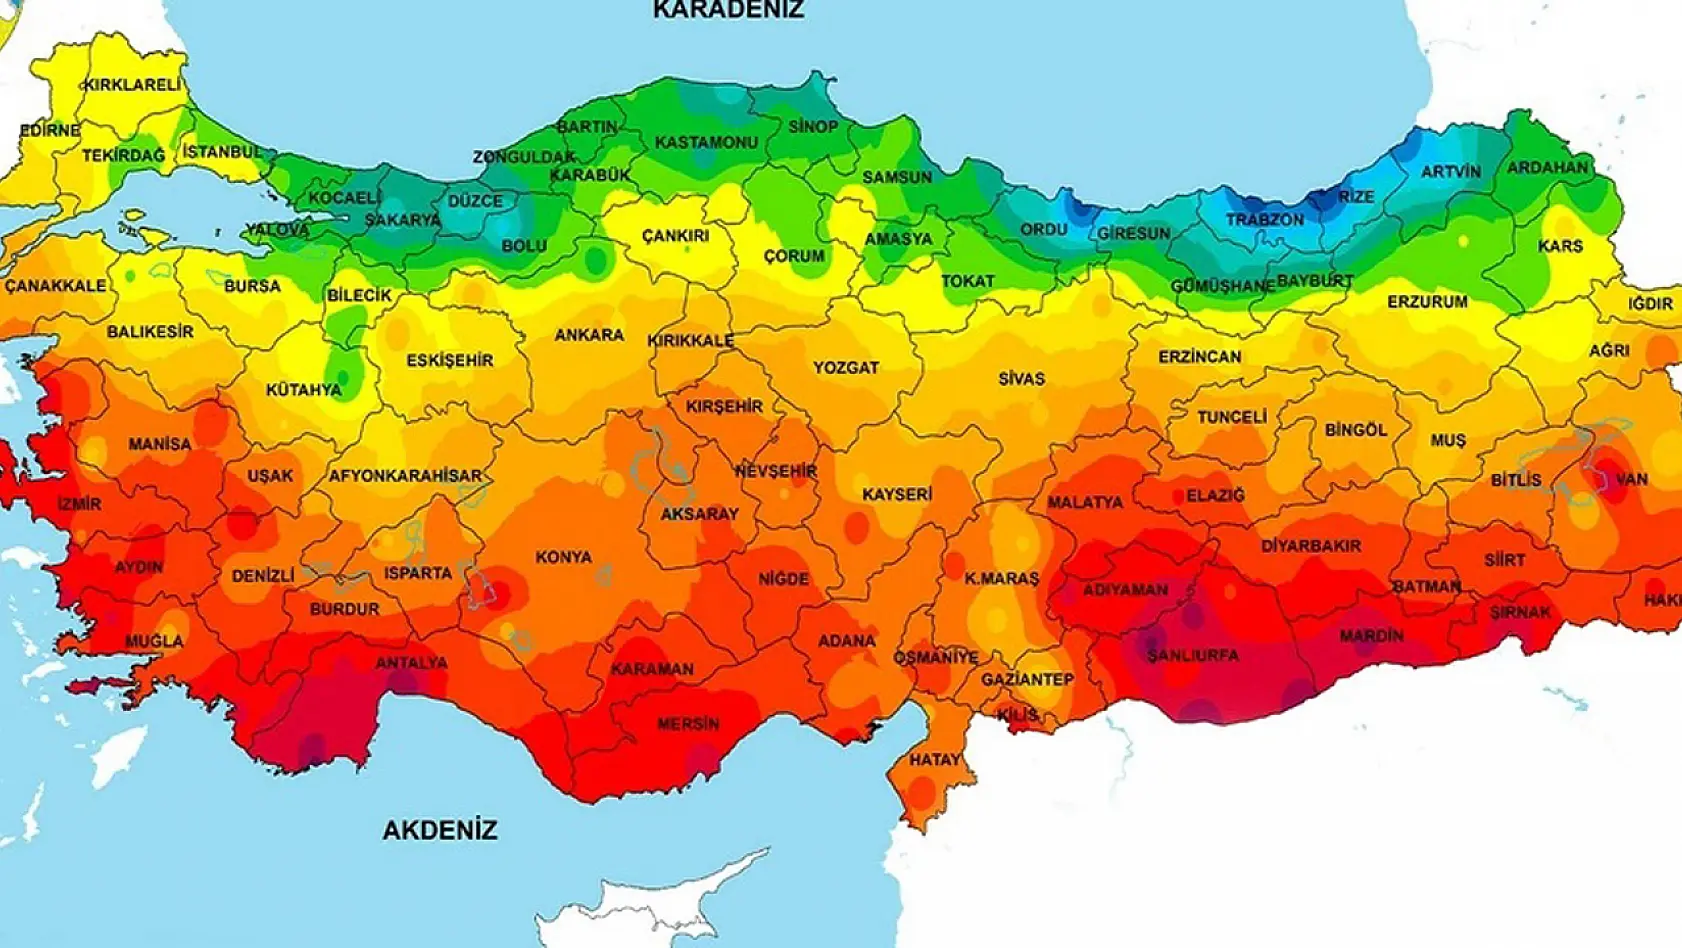 Elazığ, Bingöl, Malatya ve Çevre İller Hariç Tüm Türkiye'ye Geliyor!